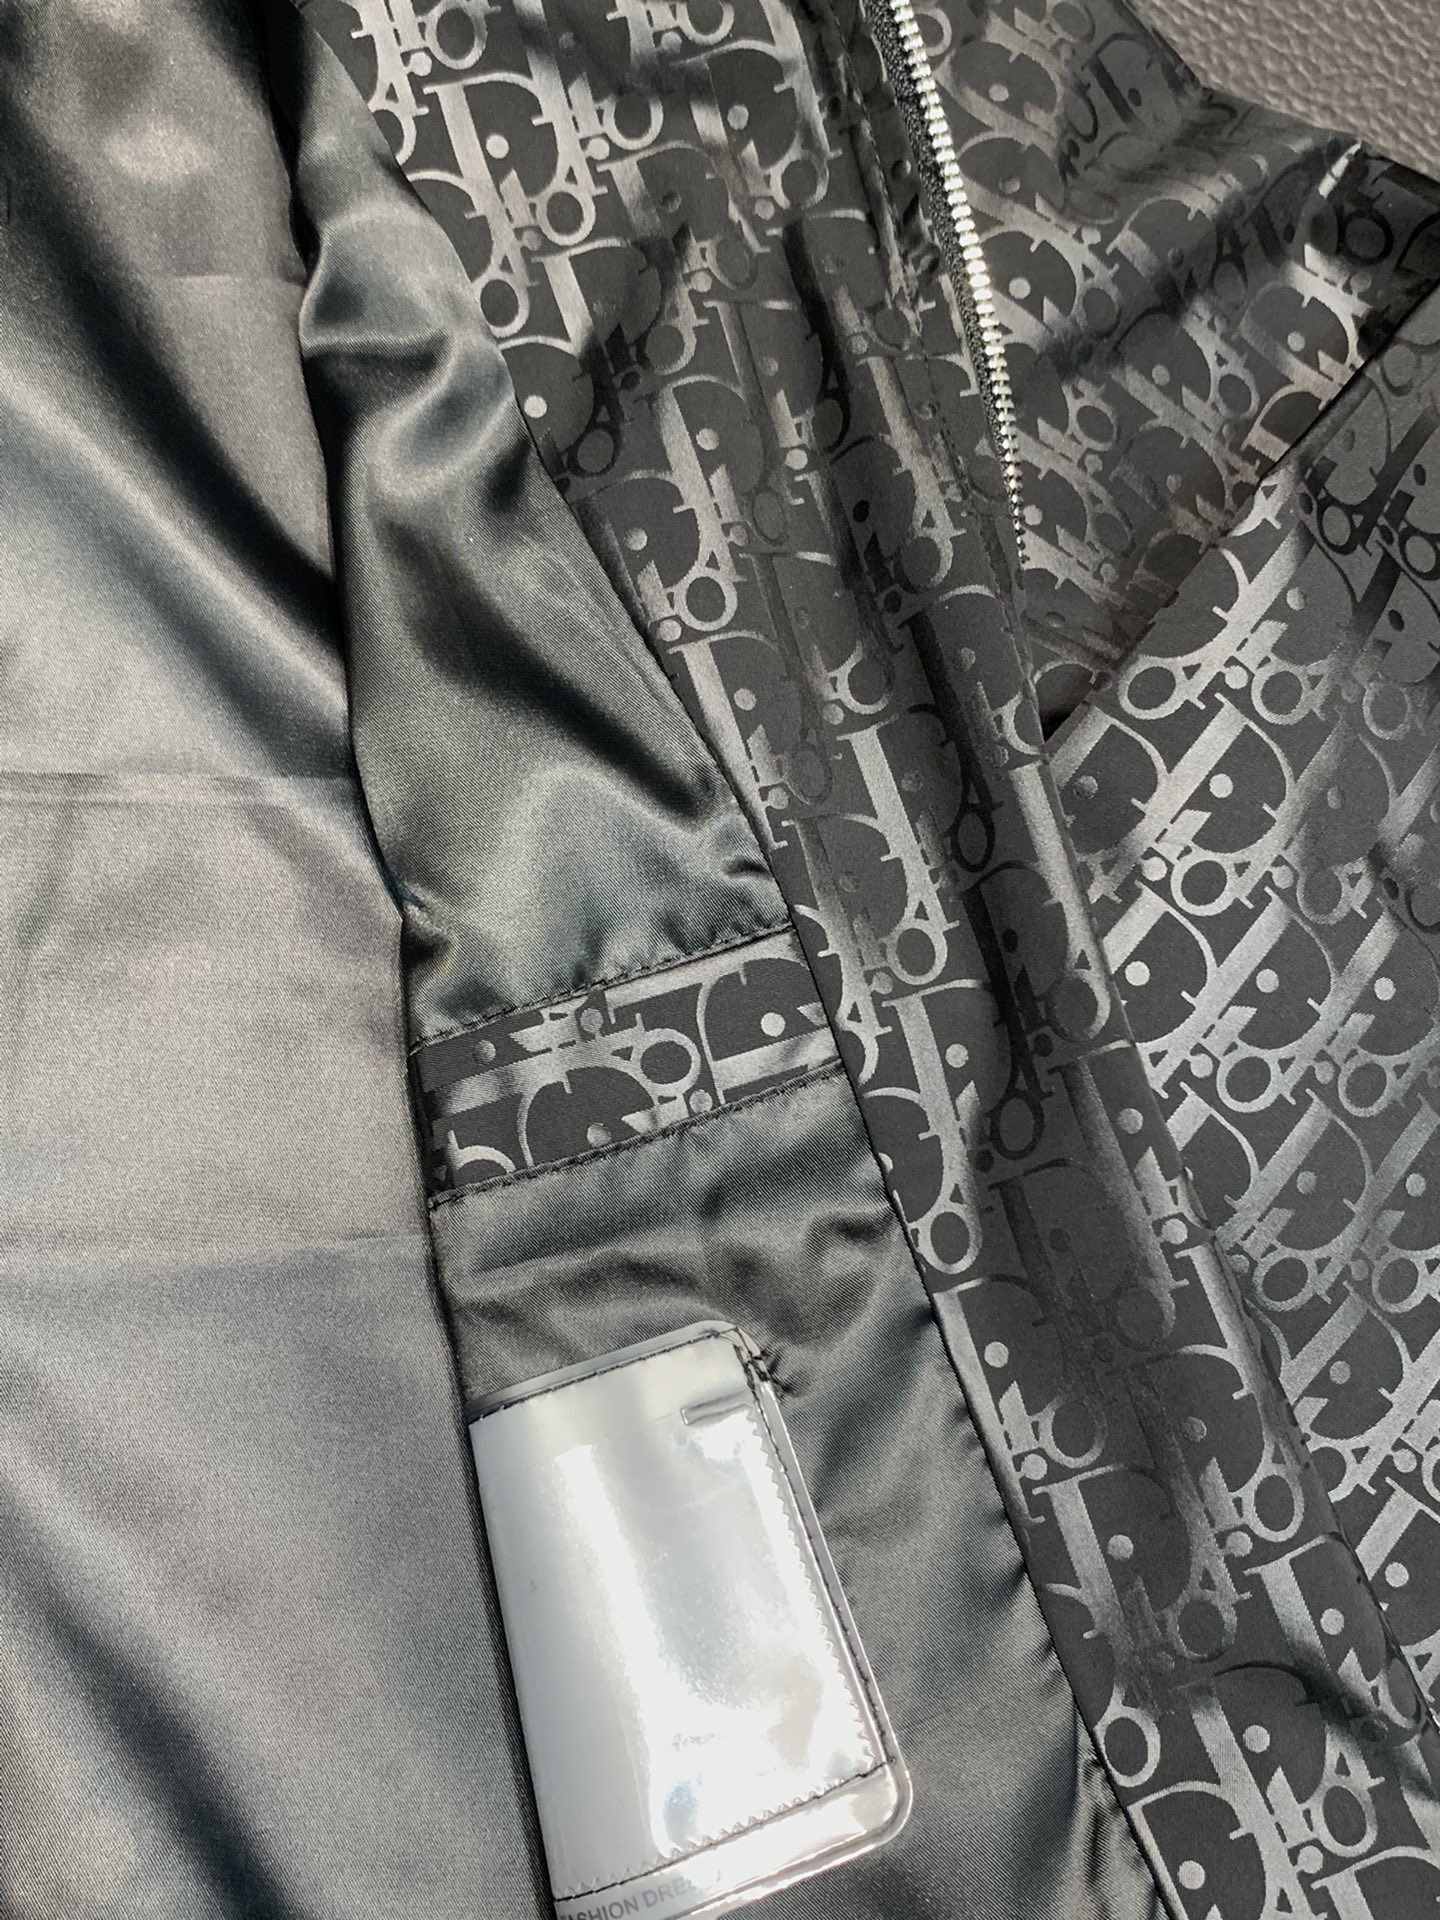 Dior迪奥独家专供最新春秋时尚夹克经典设计感与颜值爆棚的外套品质更是无法挑剔品控可以直接入手不容过错的